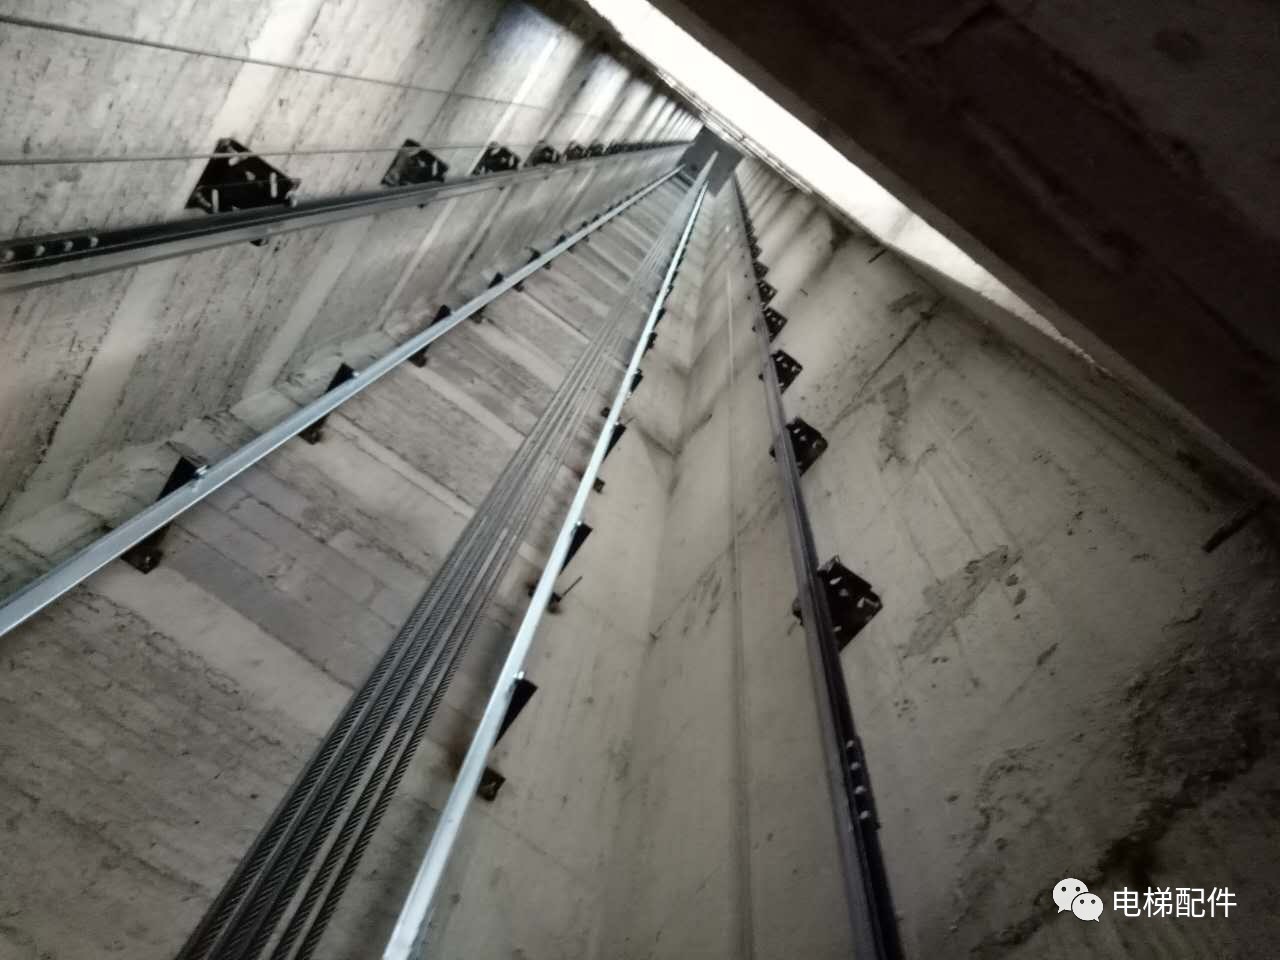 德奥电梯配导轨支架1.5米一档,井道很漂亮